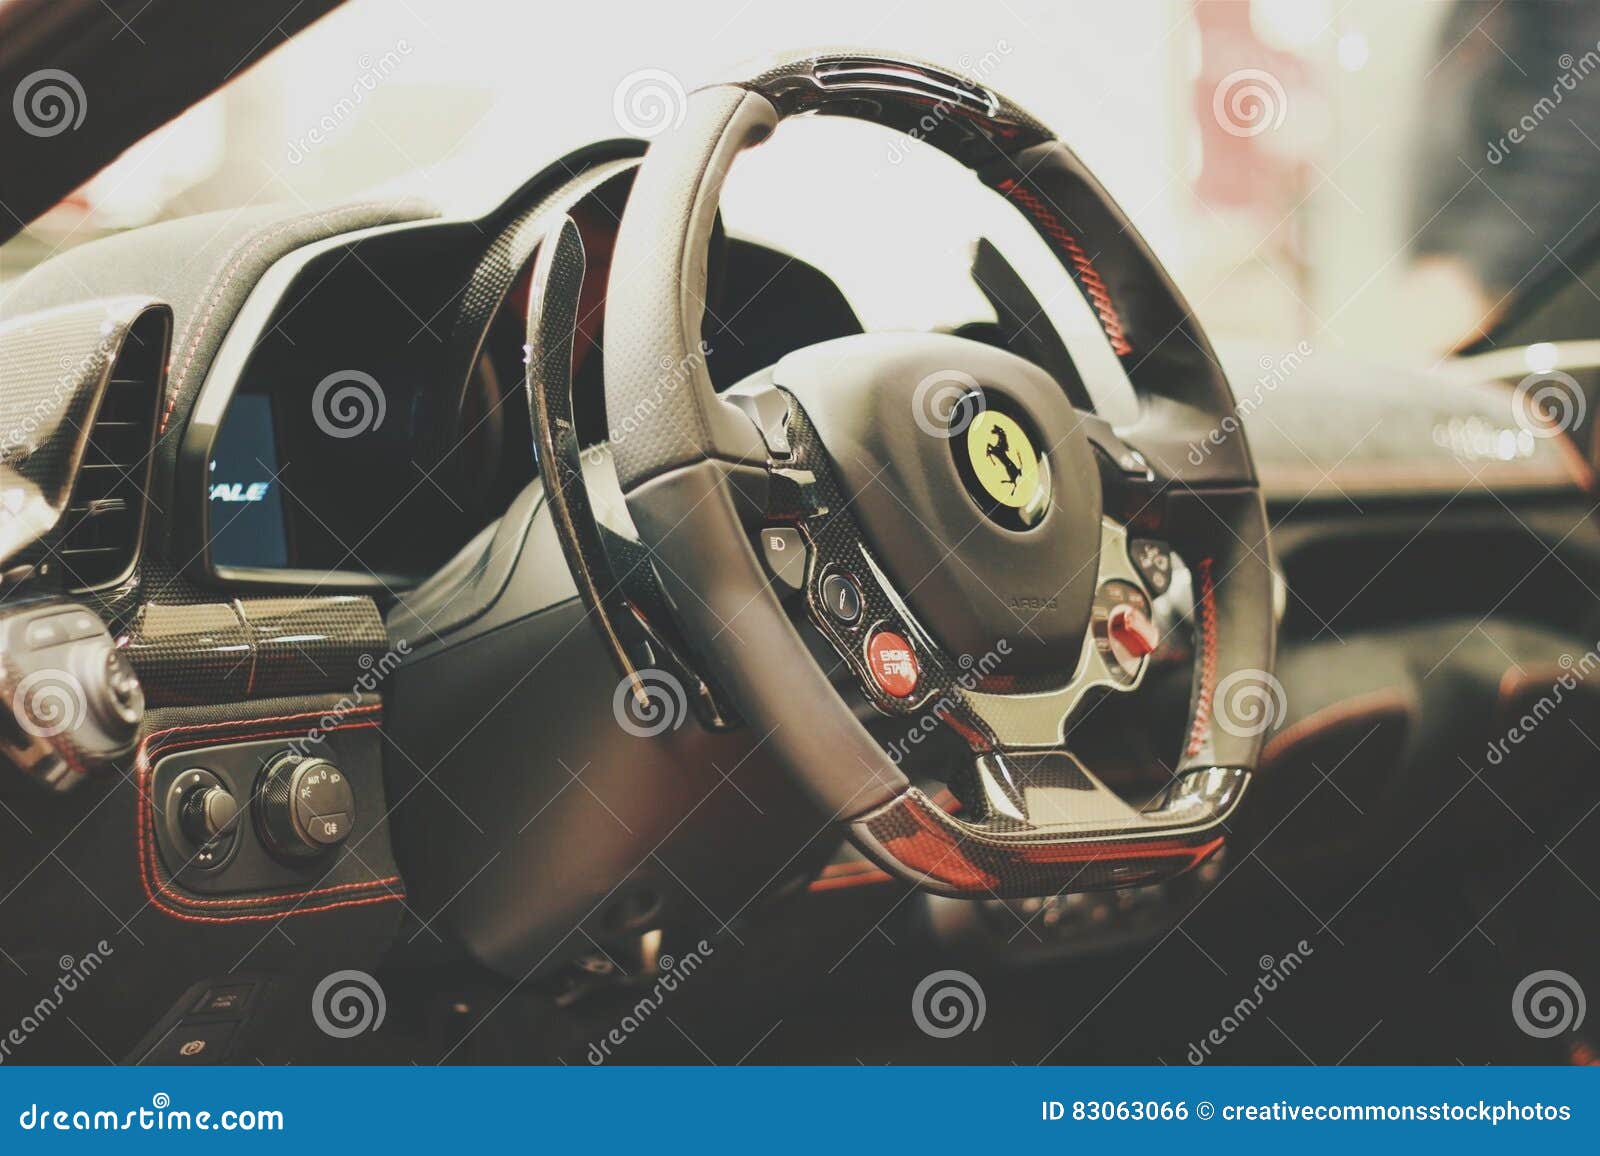 Ferrari Car Interior Picture Image 83063066